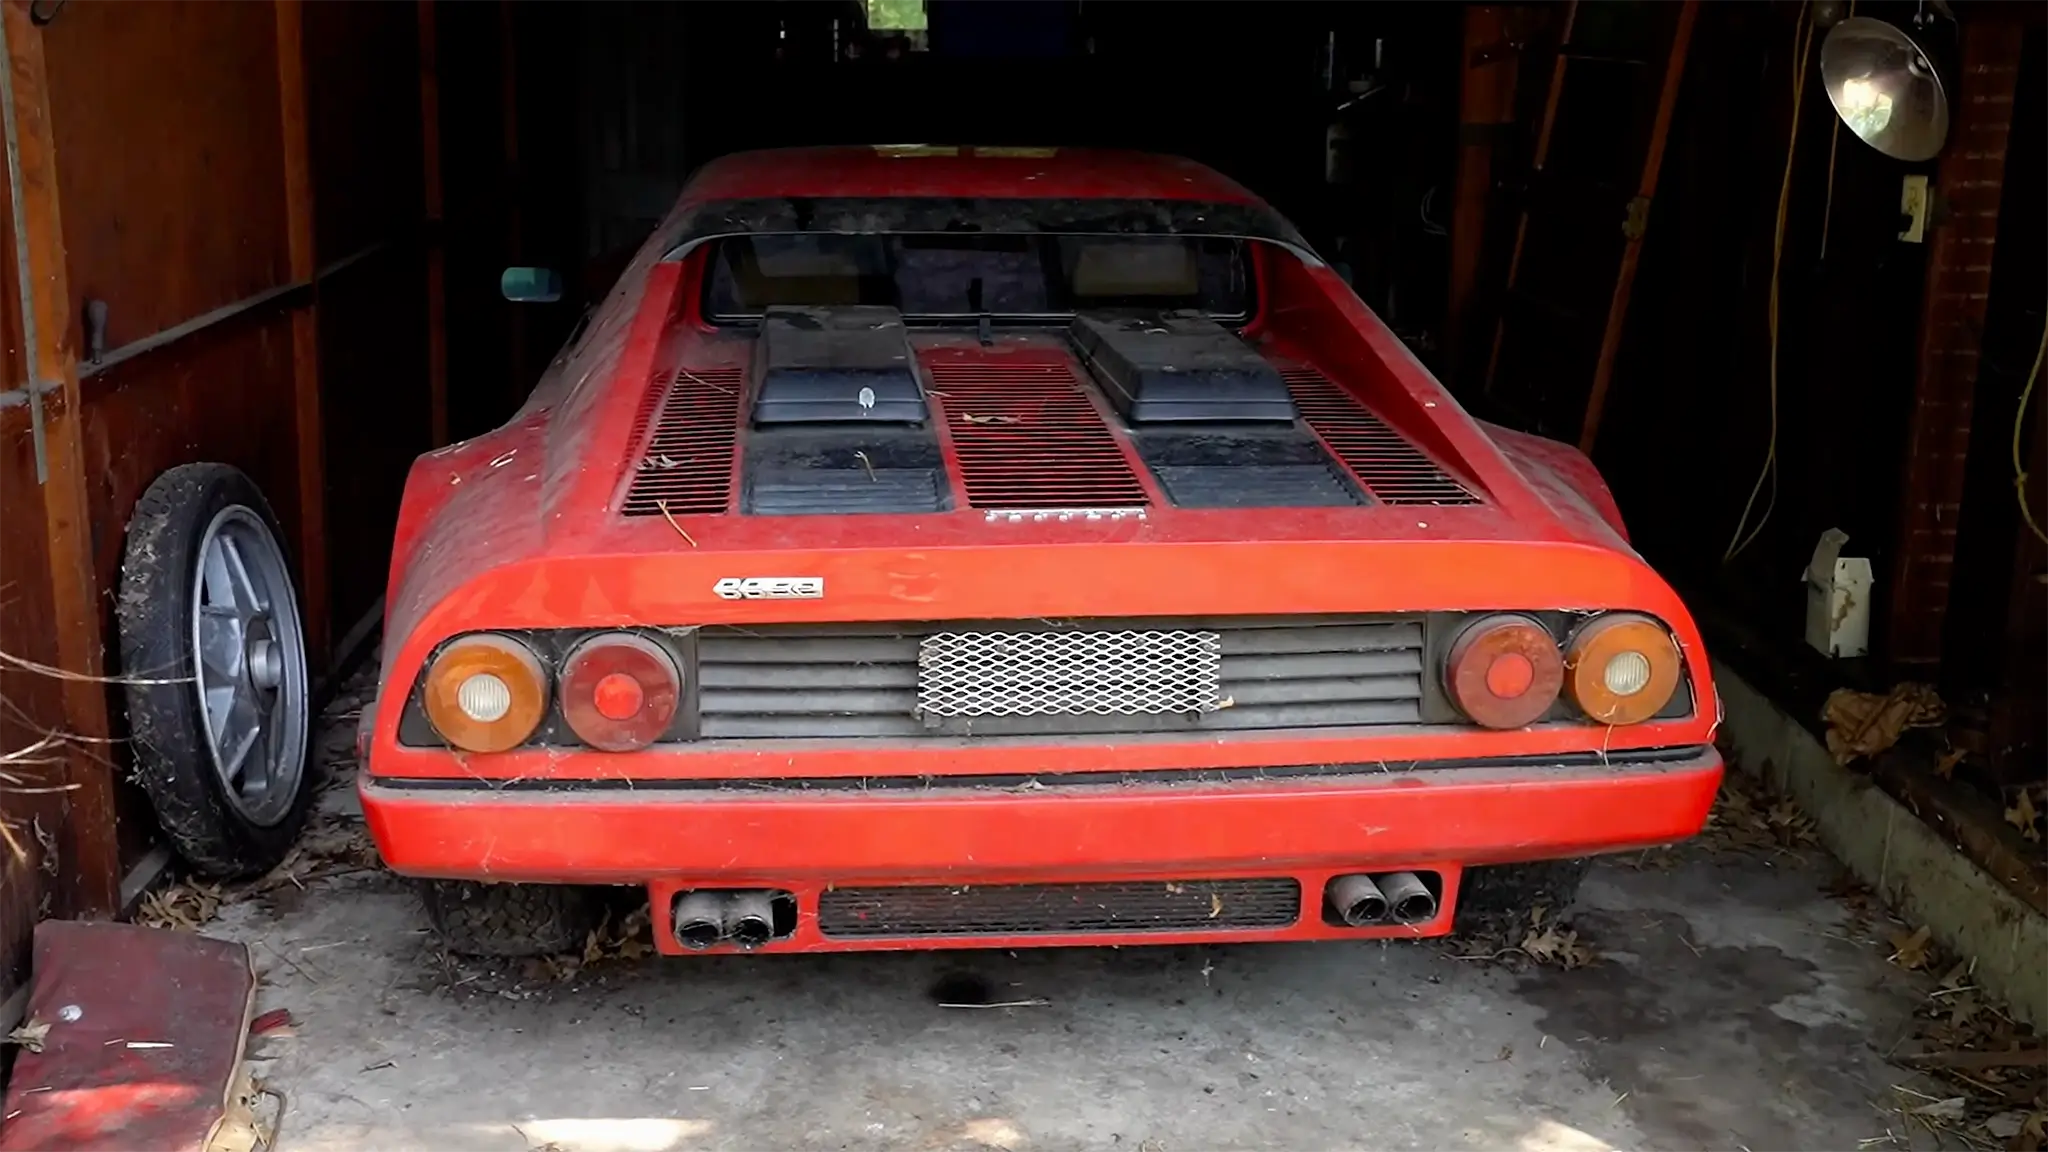 Este Ferrari esteve “esquecido” numa garagem durante 28 anos